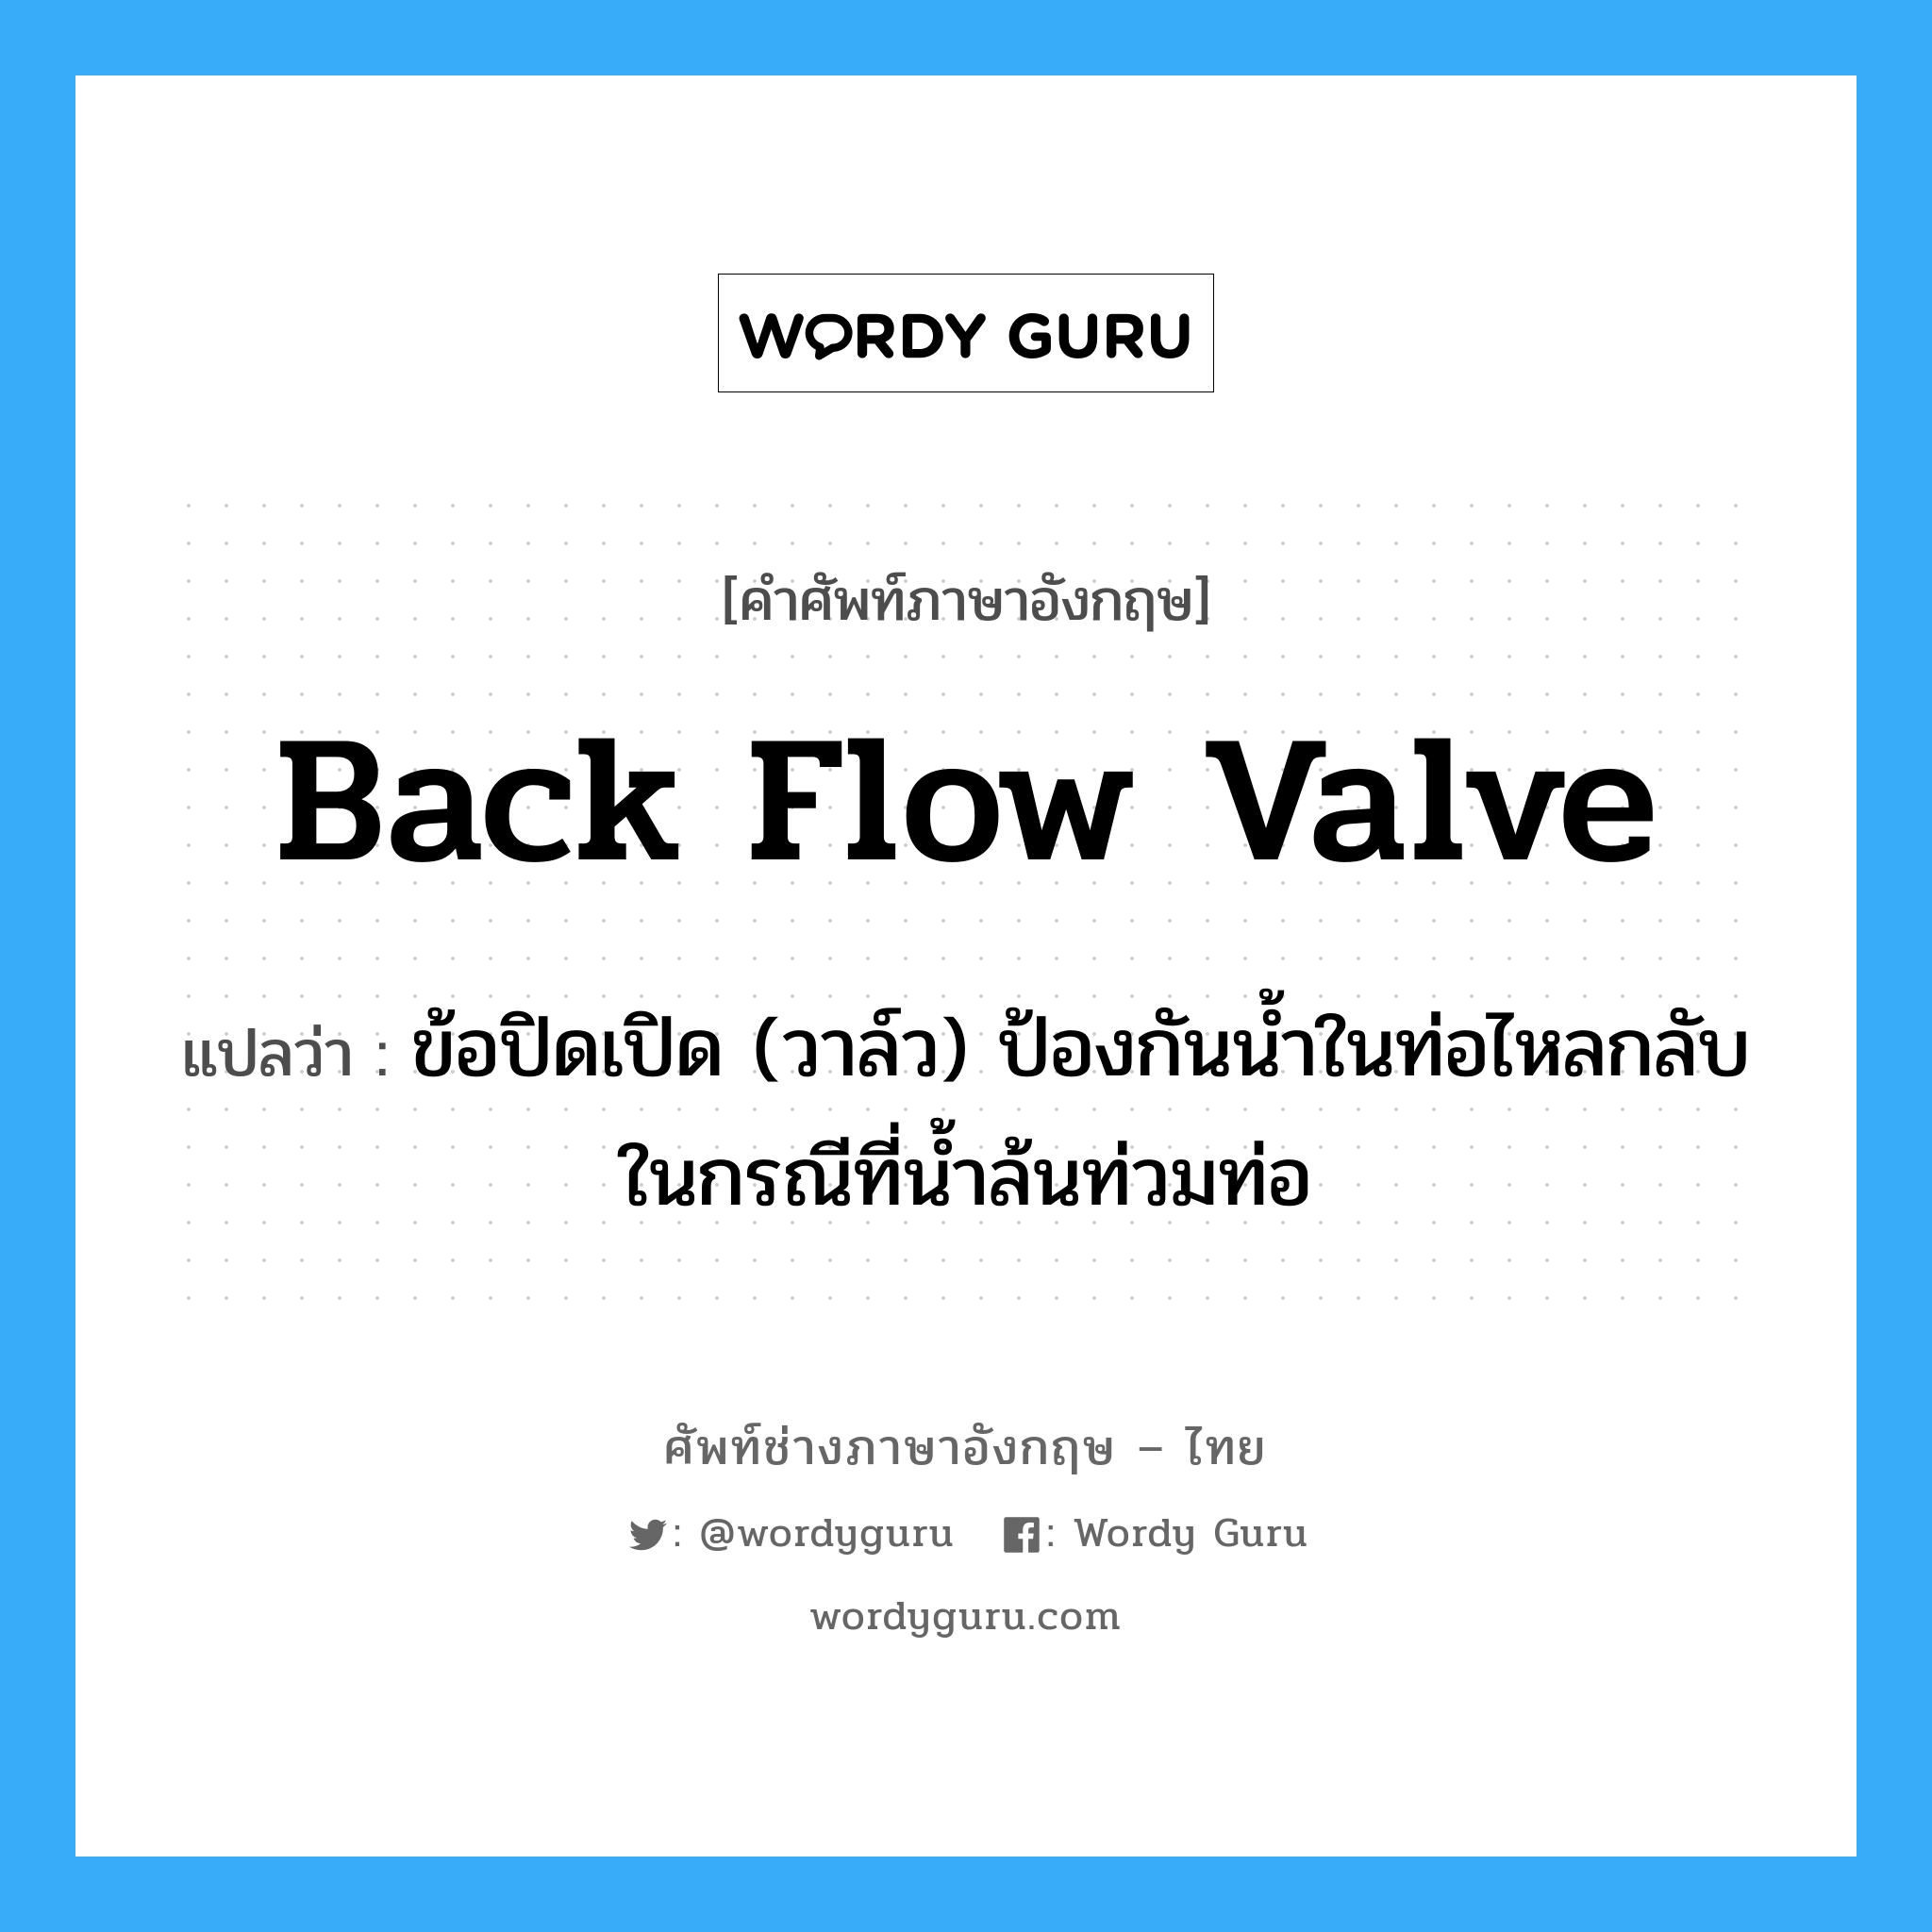 back flow valve แปลว่า?, คำศัพท์ช่างภาษาอังกฤษ - ไทย back flow valve คำศัพท์ภาษาอังกฤษ back flow valve แปลว่า ข้อปิดเปิด (วาล์ว) ป้องกันน้ำในท่อไหลกลับ ในกรณีที่น้ำล้นท่วมท่อ